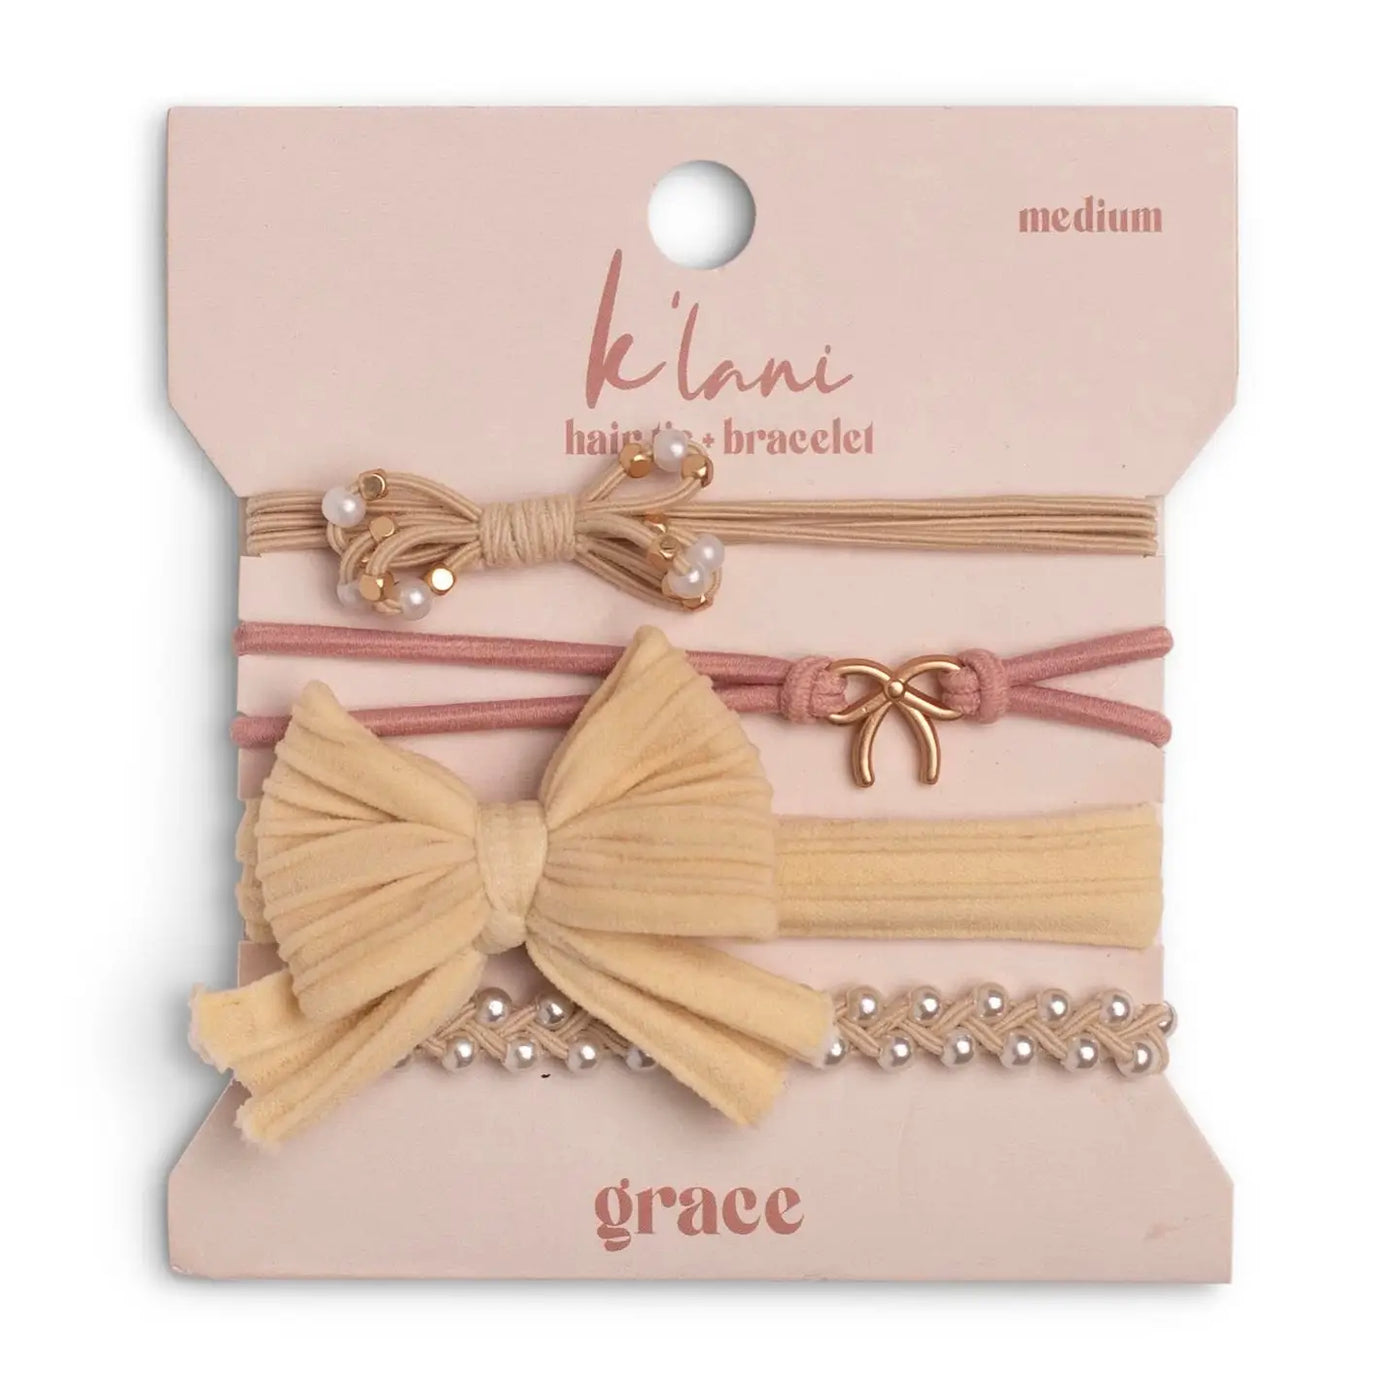 GRACE Hair tie + Bracelet from K'lani